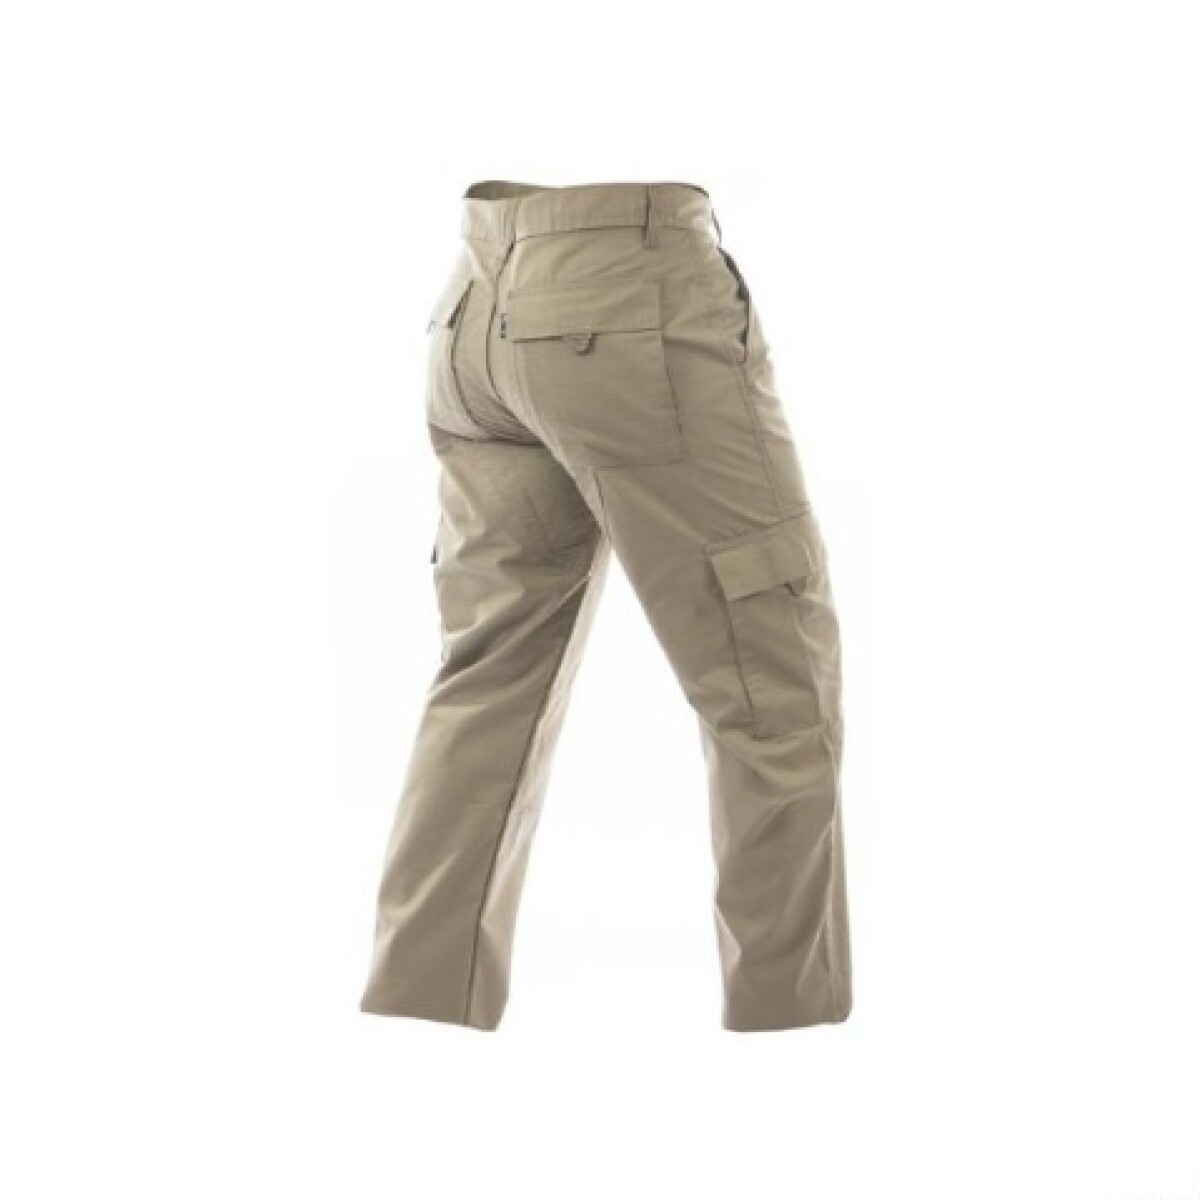 Pantalón táctico en tela antidesgarro con protección UV50+ - Fox Boy - Caqui 